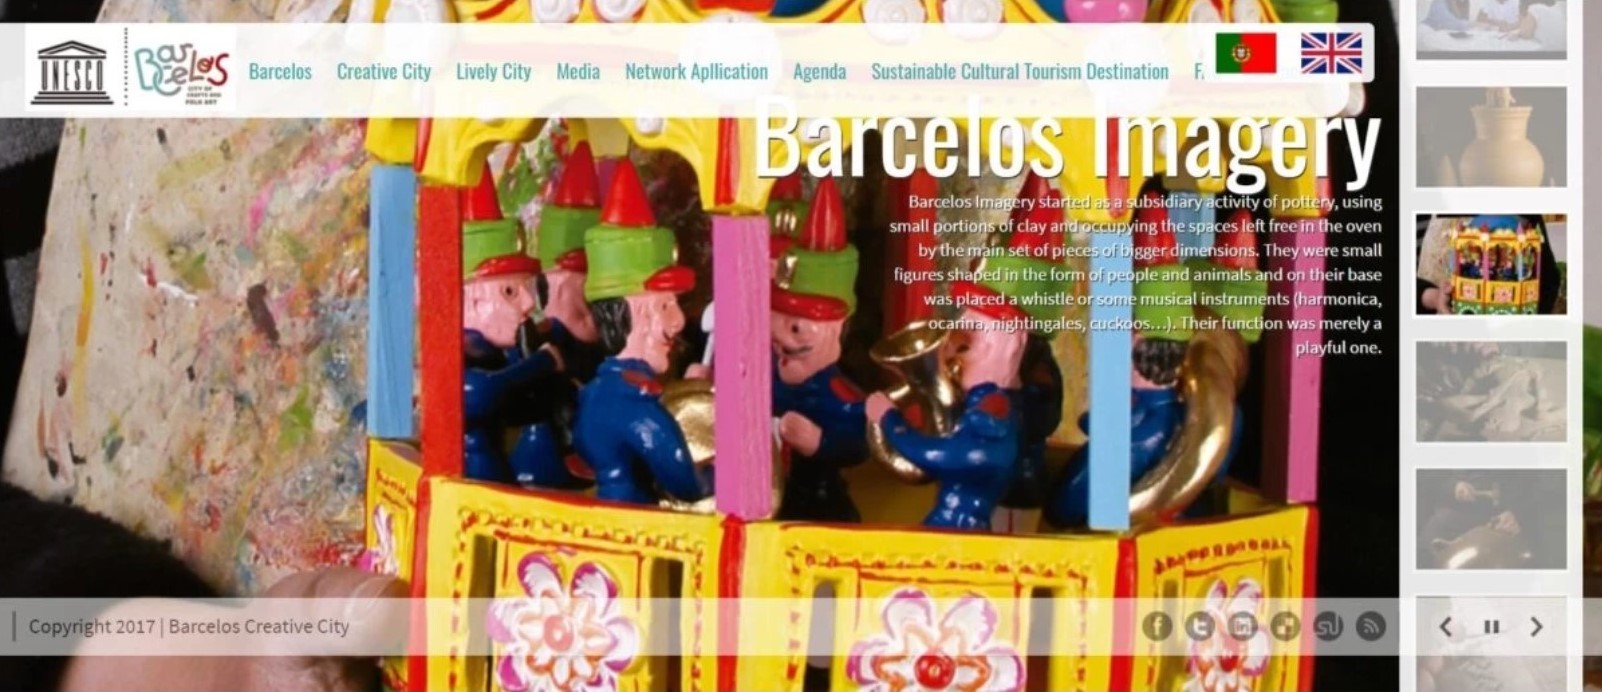 barcelos - creative city - cidade criativa - unesco - viajar - viagem - turismo - artesanato - cultura popular - artesanato - figurado